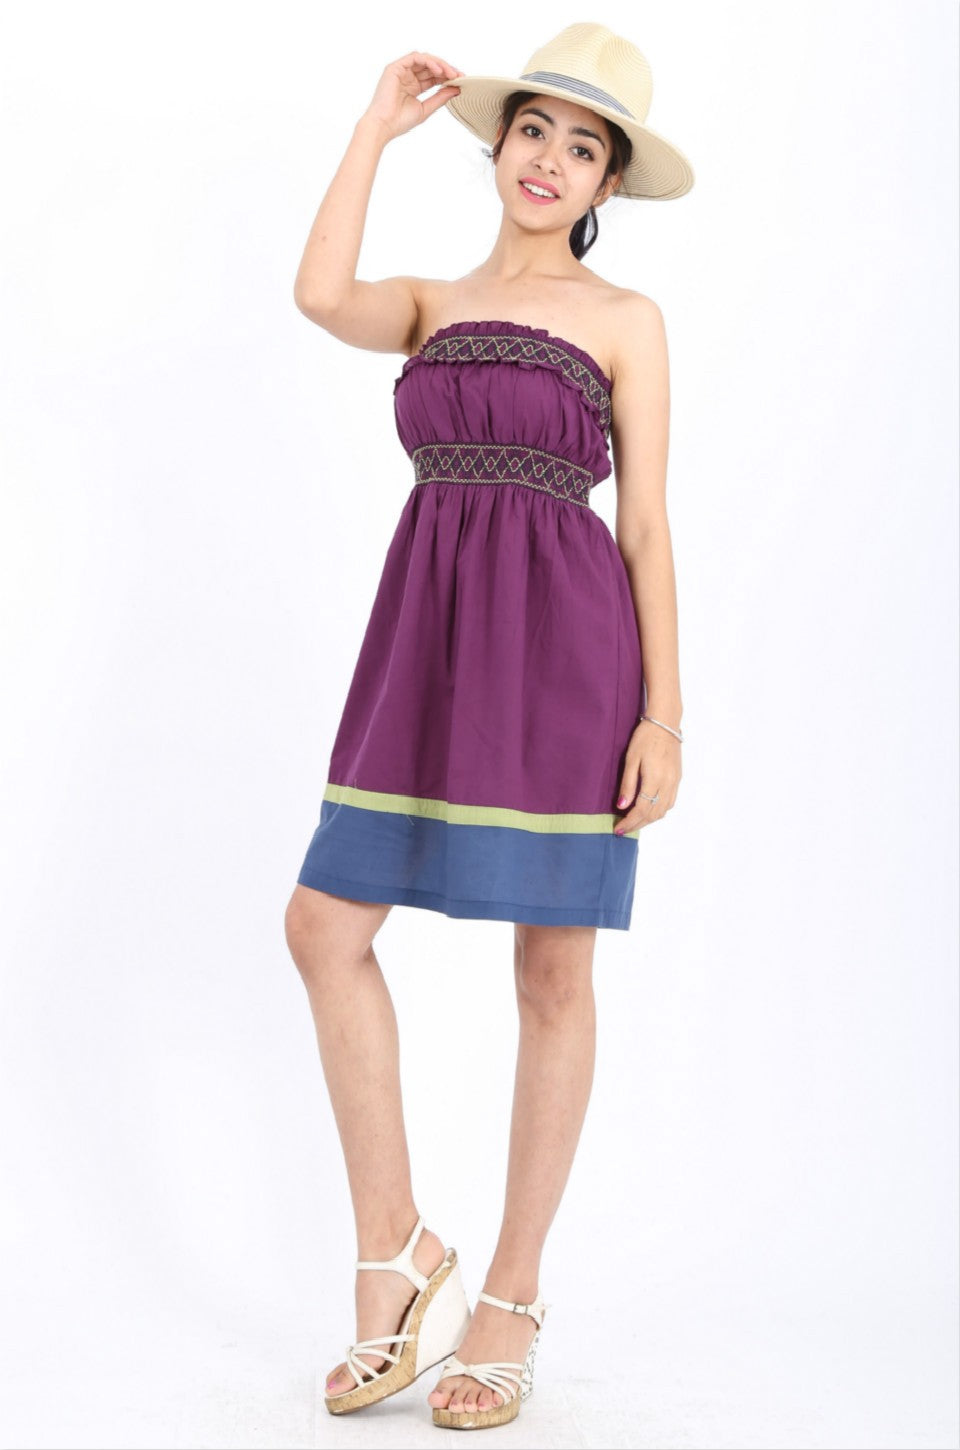 MISS PINKI Stella boob-tube dress in purple Embroidery dress mini dress casual dress summer dress sundress beach dress